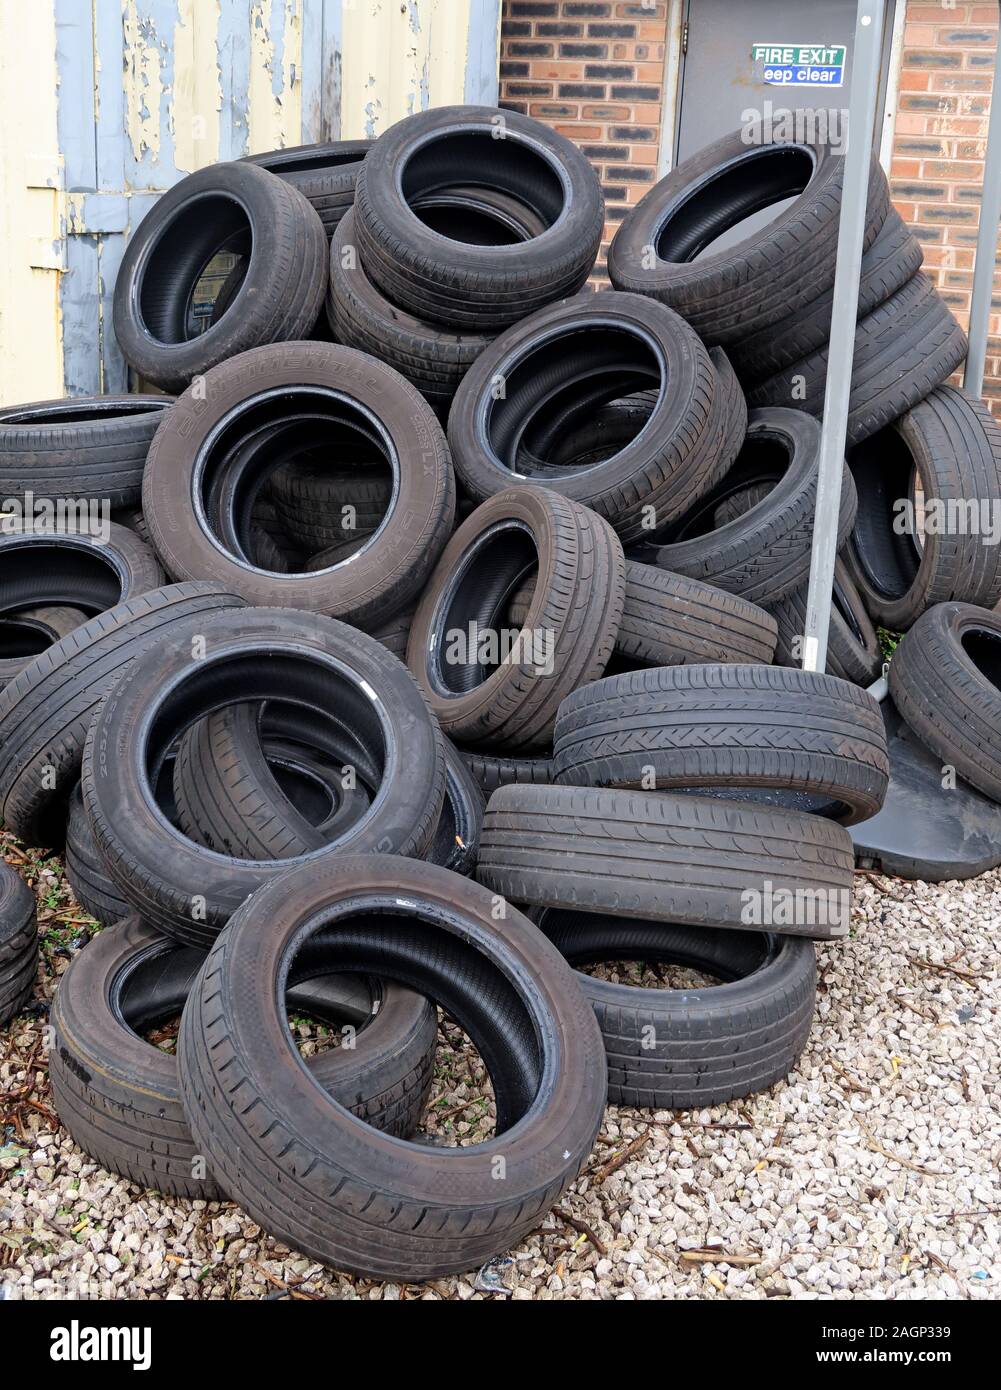 Mise au rebut et vidage des pneus dans une pile, recyclage des pneus en caoutchouc Banque D'Images